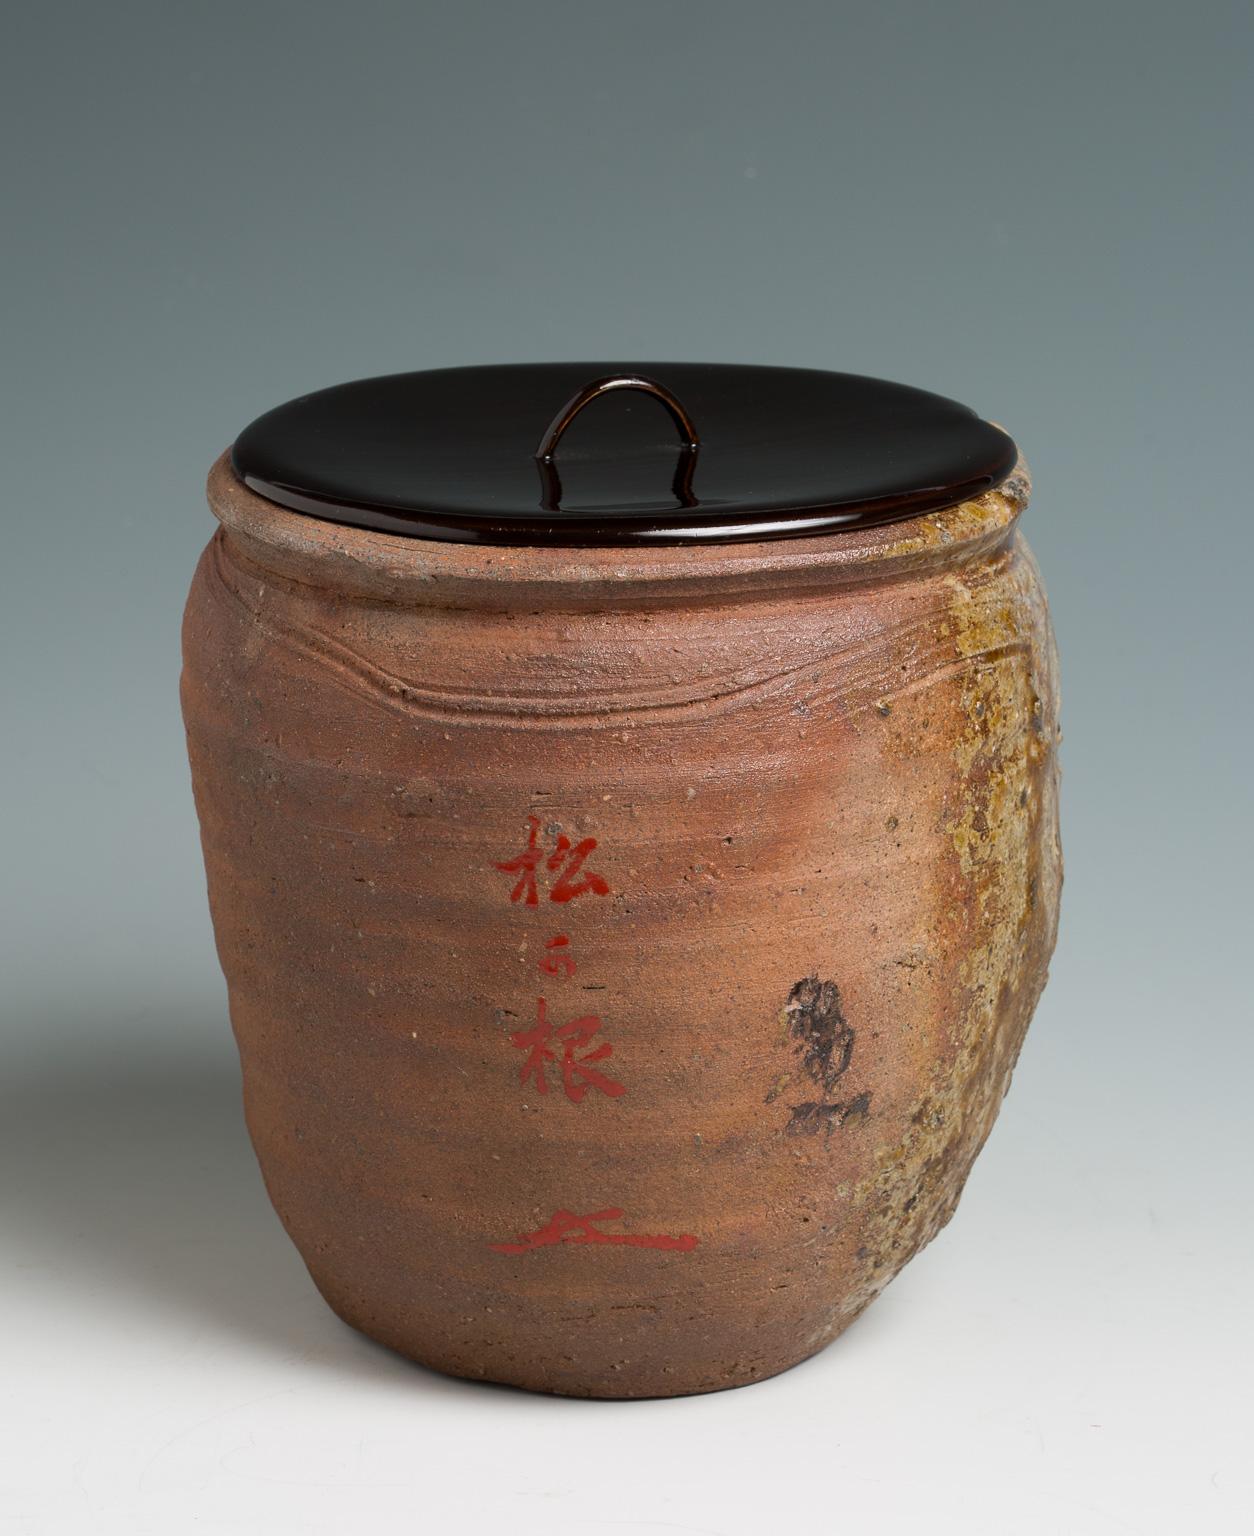 Ceramic Japanese Ko-Bizen Water Jar ‘Mizusashi’ Named “Matsugane”, 16th Century